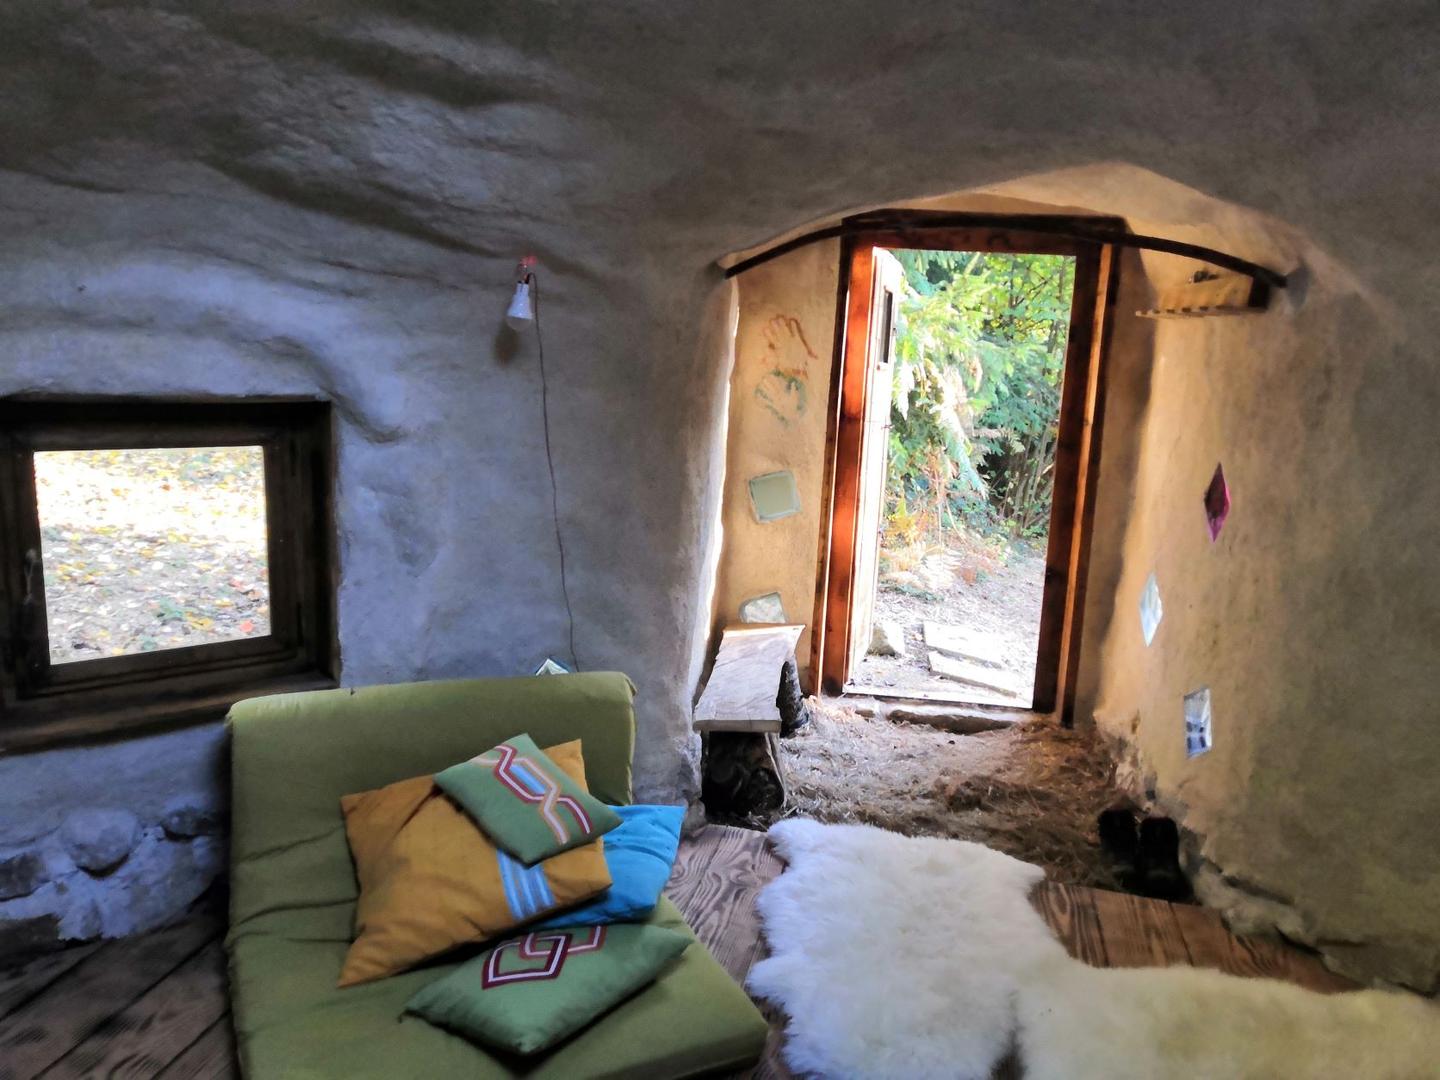 Hôte GreenGo: Les loges de la nature - Nuits en Kerterre pour vivre confortablement la simplicité en pleine nature - Image 7